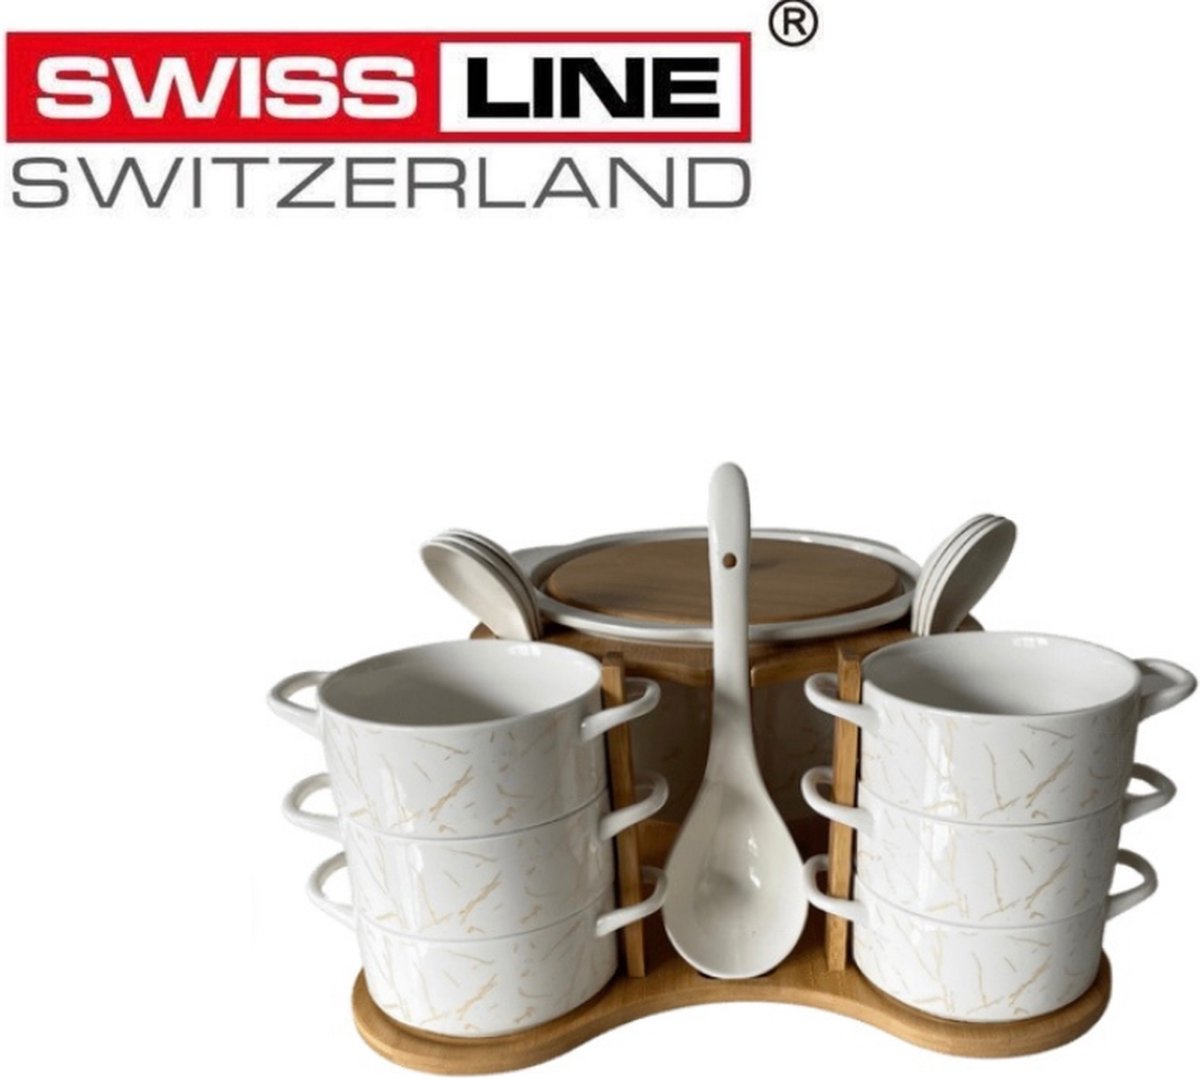 Swiss Line - 15-delige soupset - marmer goud kleurig